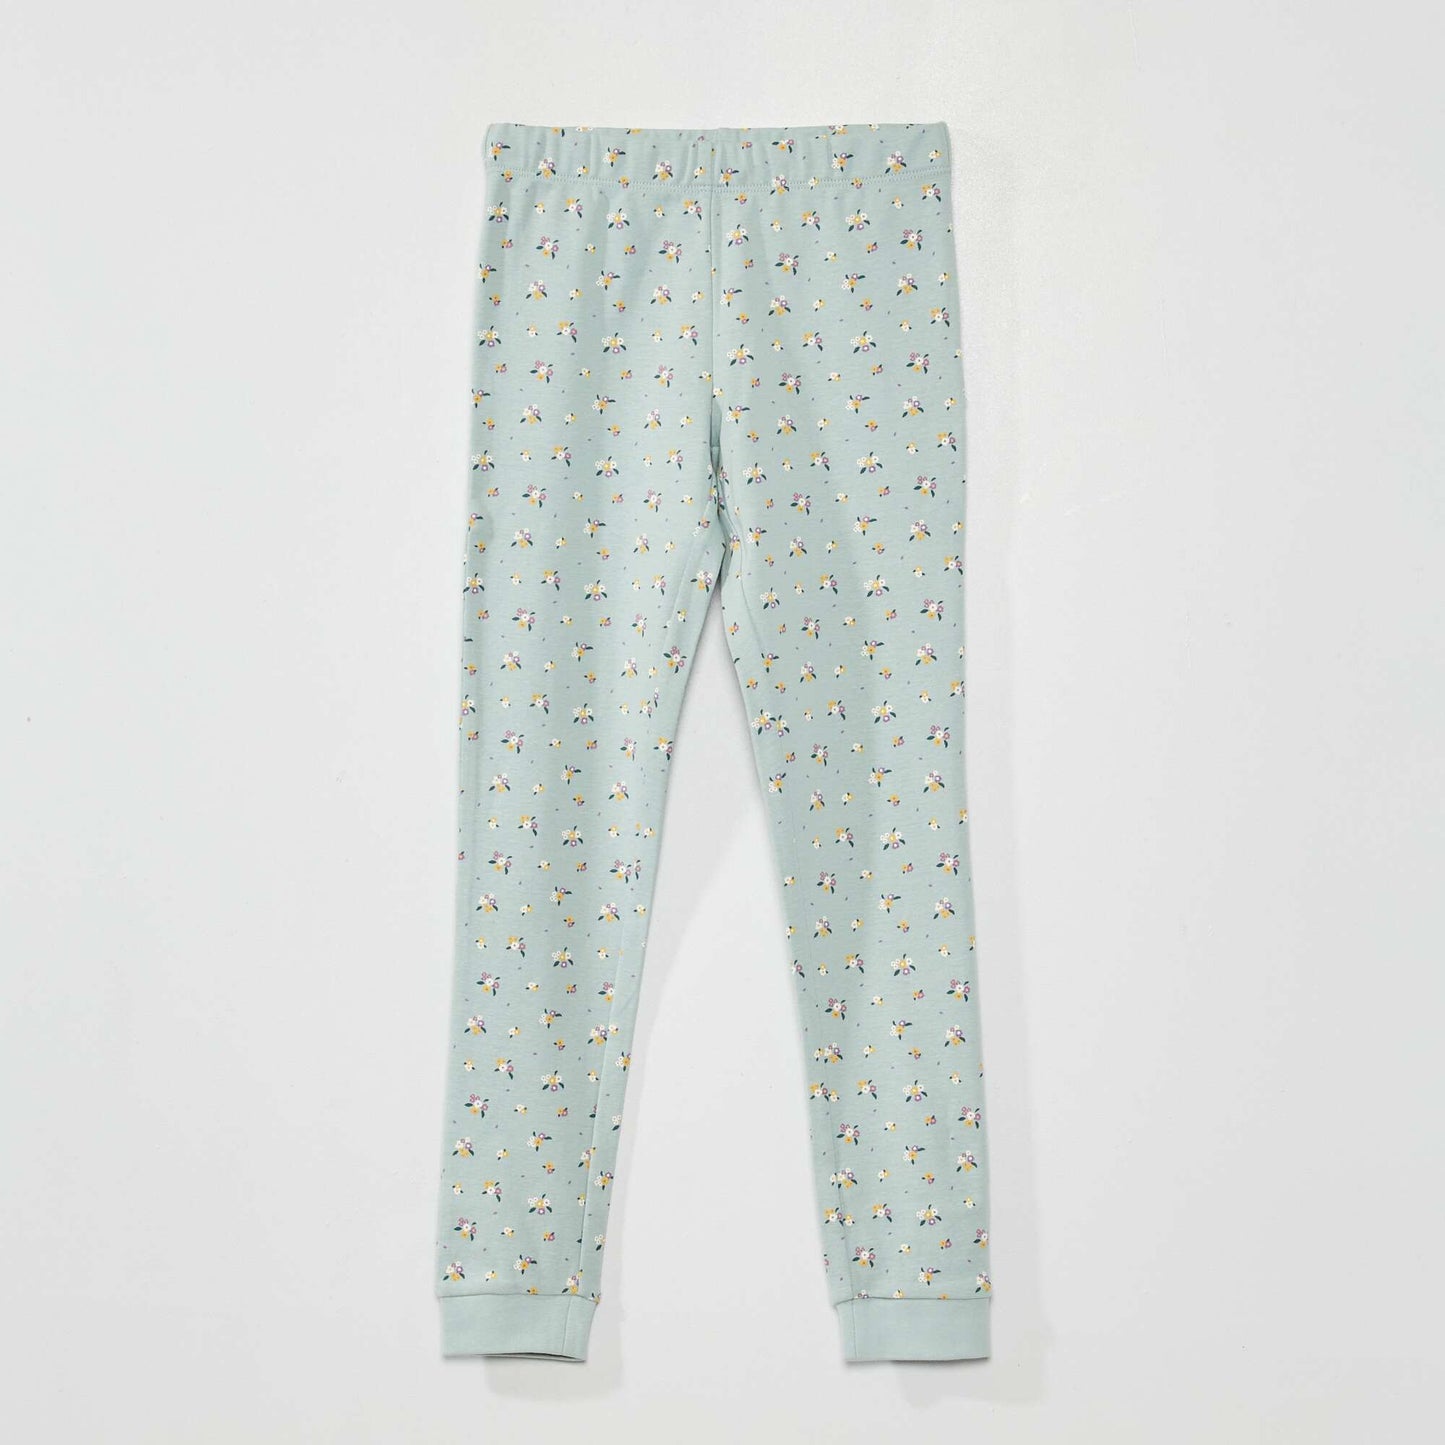 Pyjama long fleuri - 2 pi ces Bleu